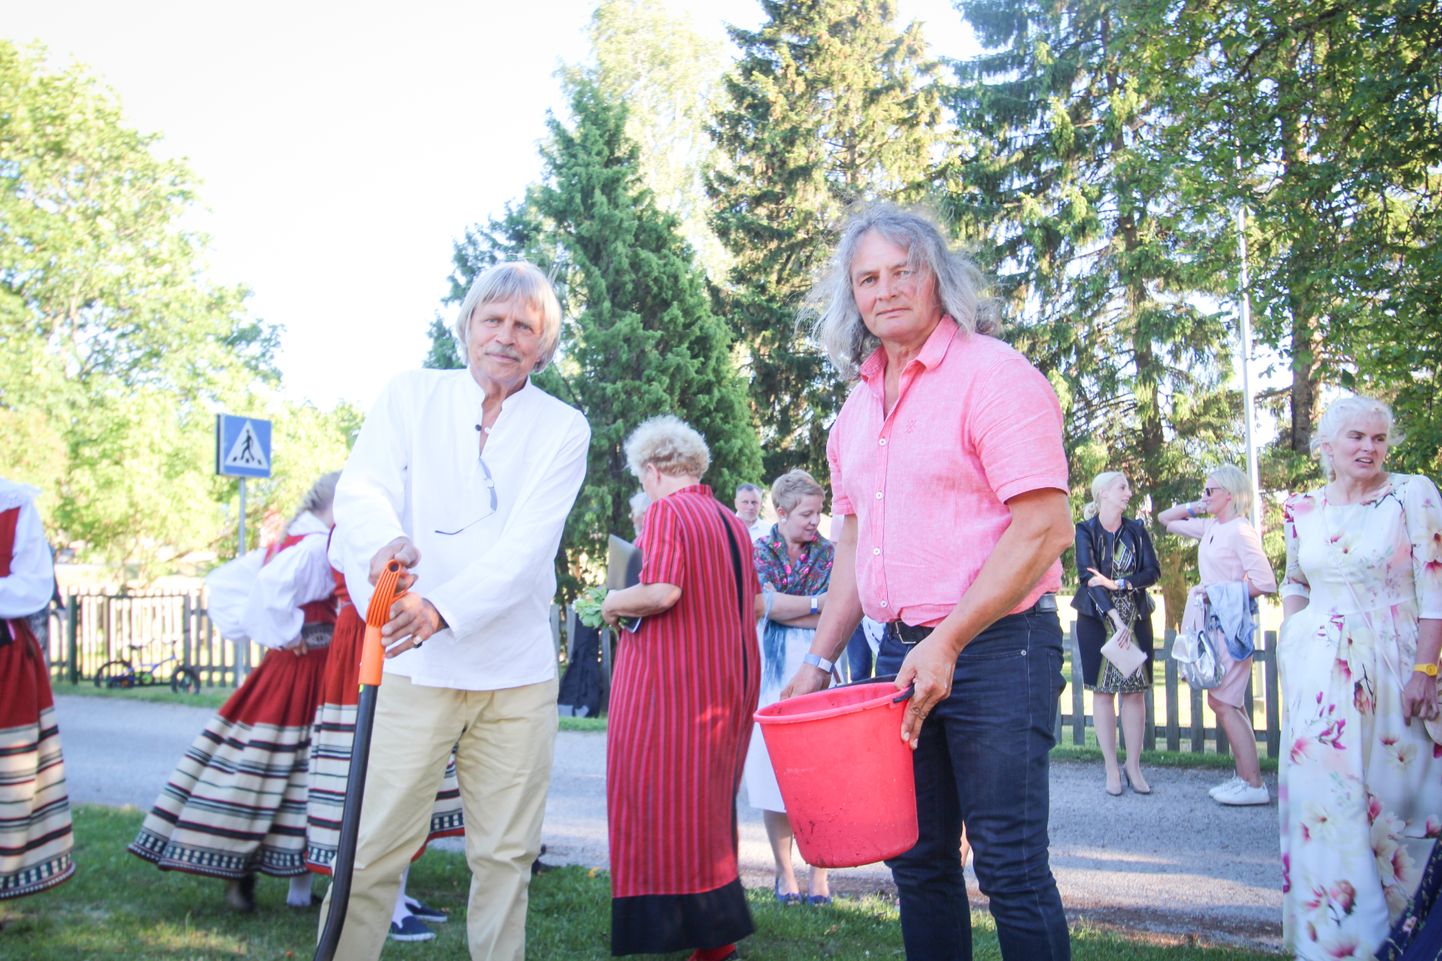 KASVA, KASVA PUUKENE: Vilistlased Vello Kald (vasakul) ja Kalle Kolter istutasid koolimaja ette puu.